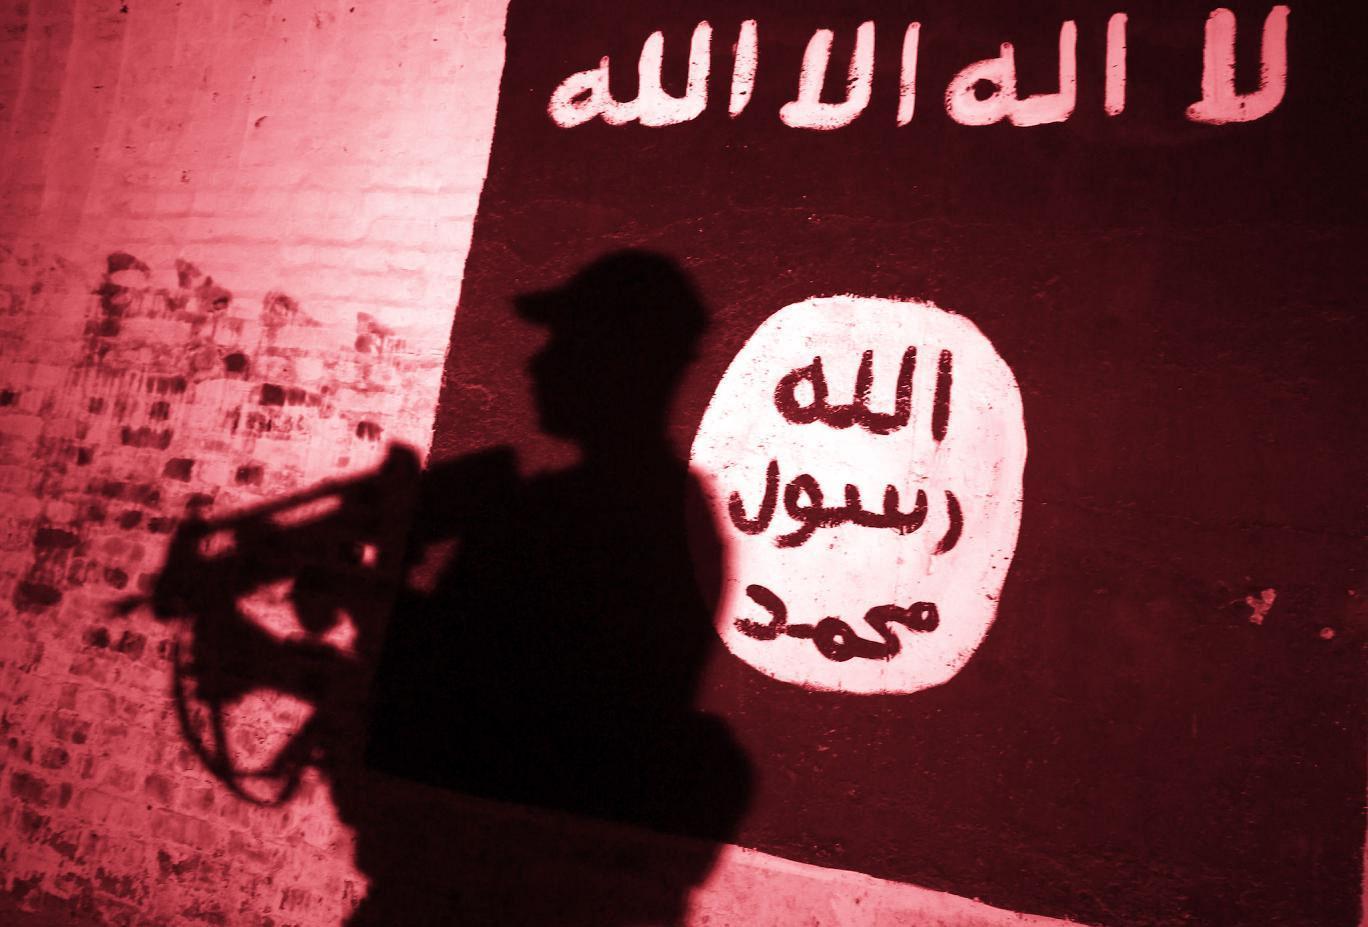 الاندبندنت تكشف عن مخطط لتنظيم "داعش" بتسميم المواد الغذائية بأسلحة كيمائية طورها بنفسه